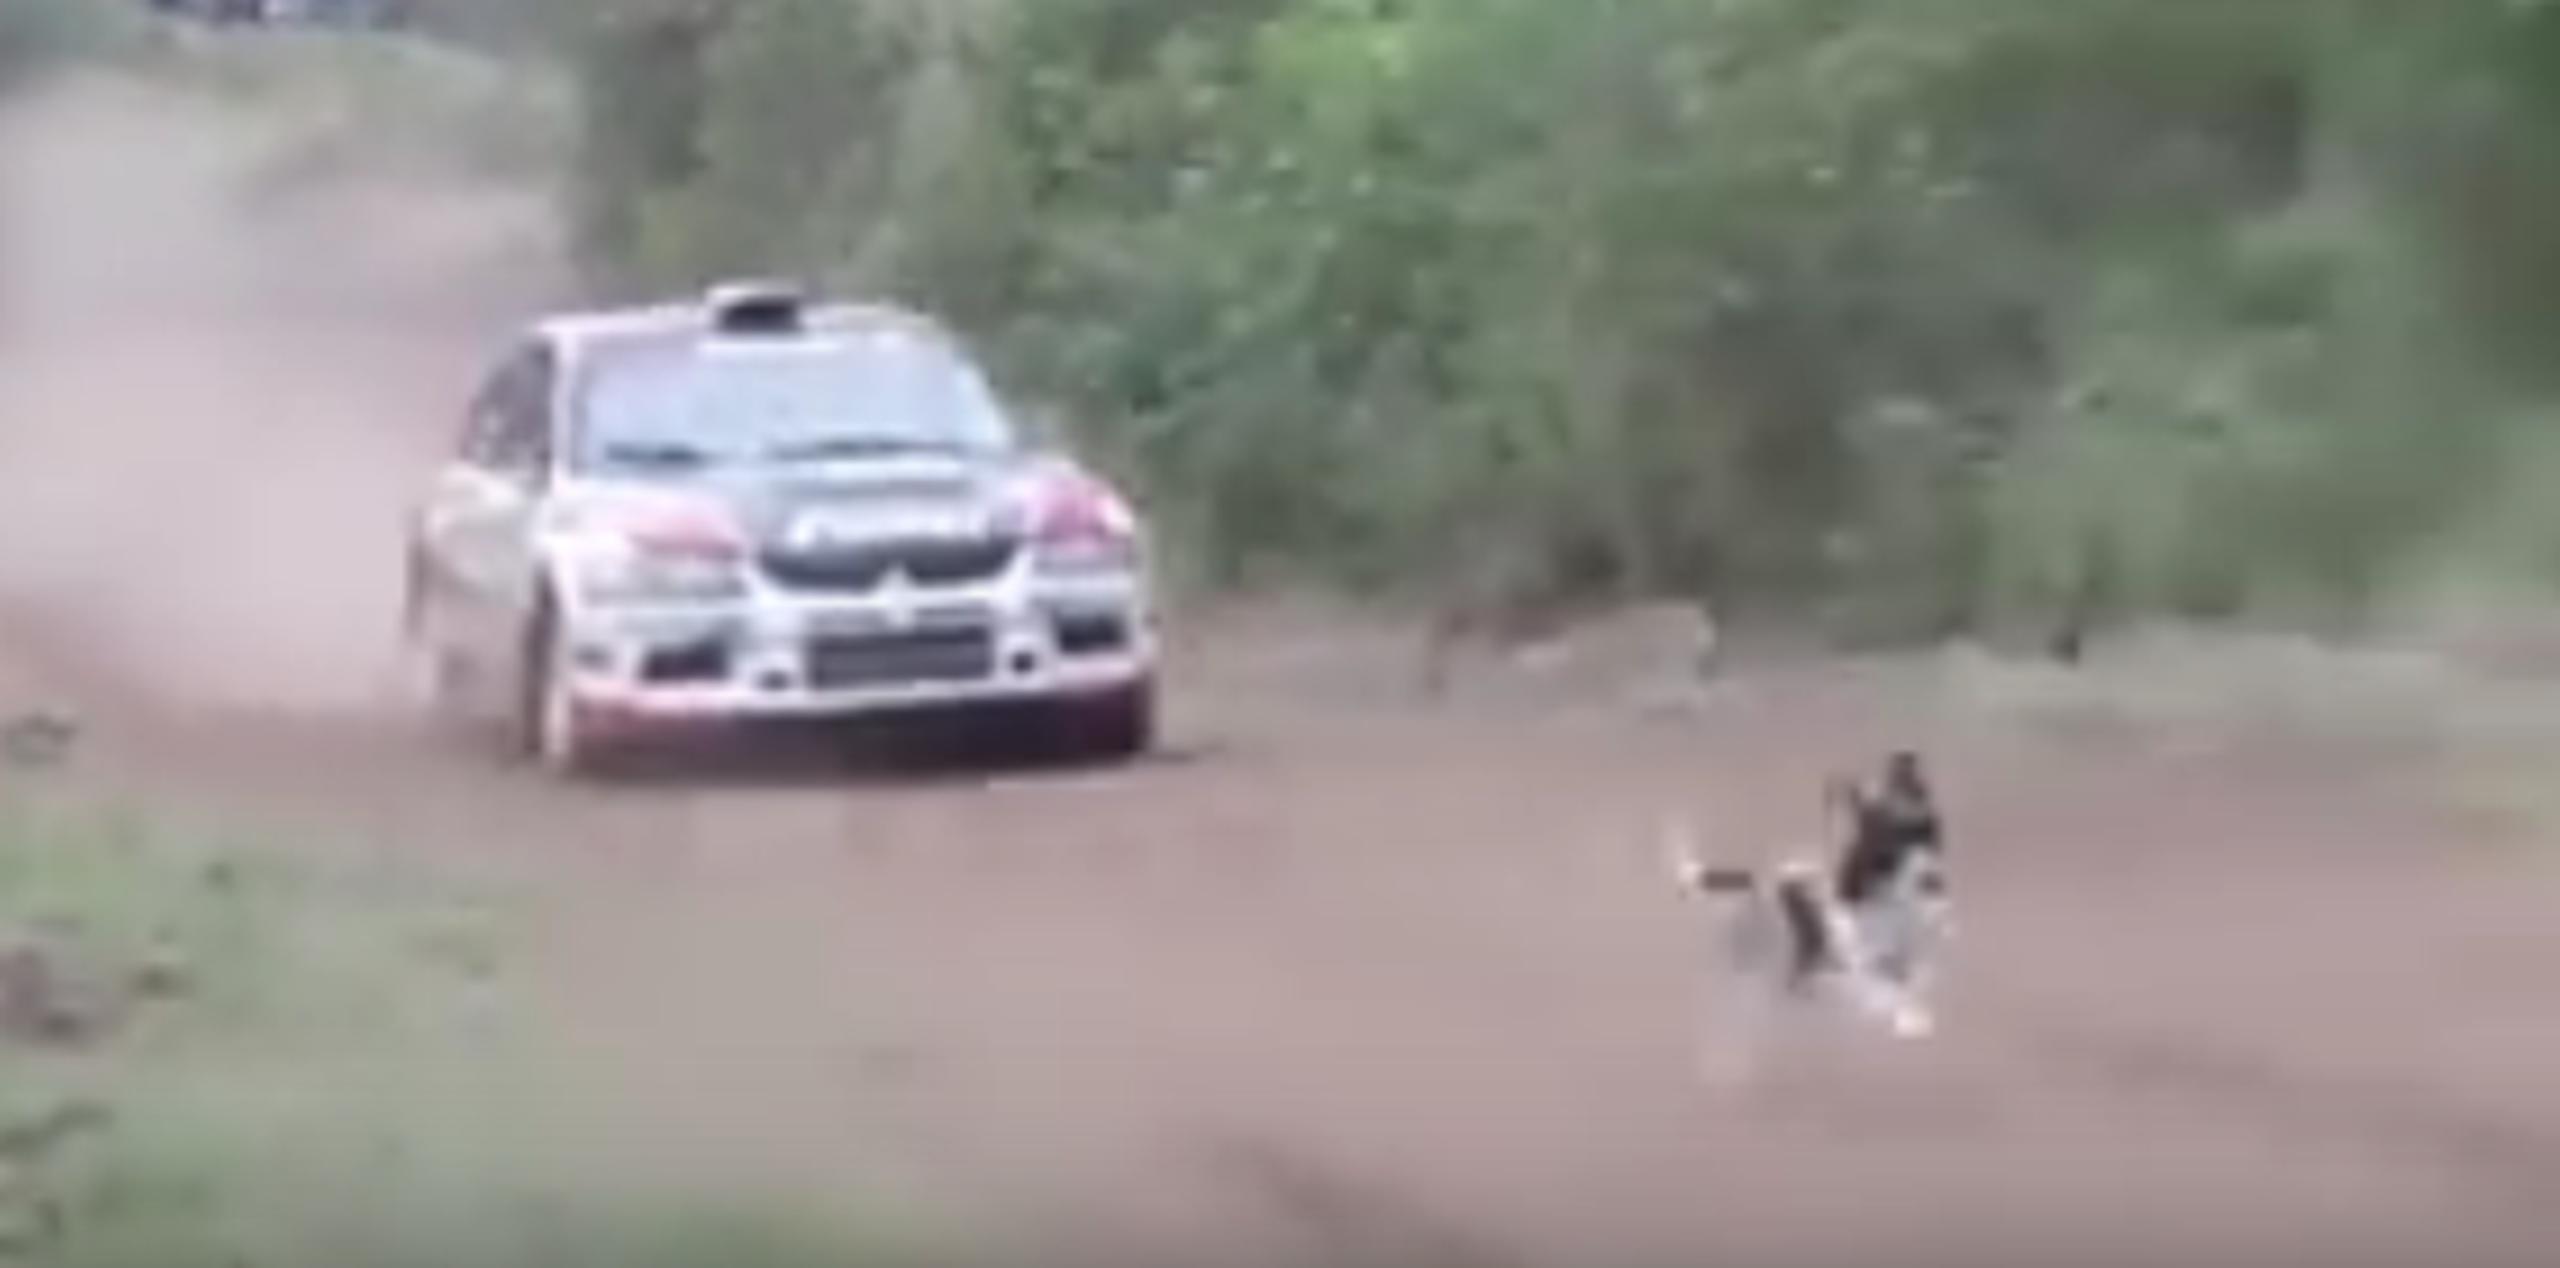 El animal se salvó milagrosamente, pues el auto logró pasar por encima de él. (YouTube)